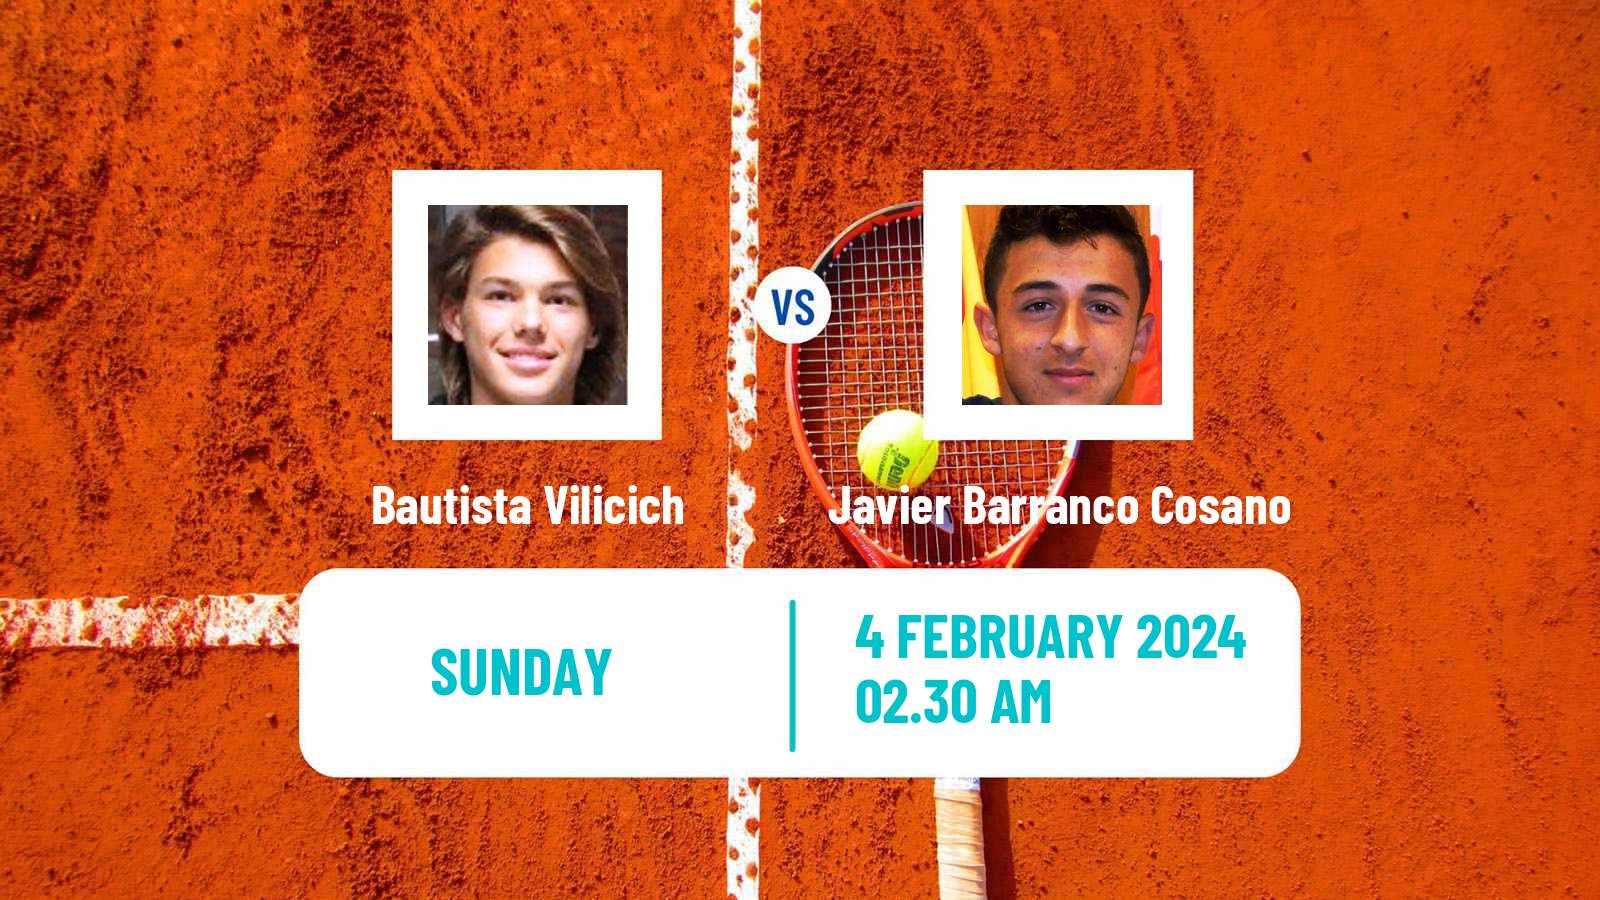 Tennis ITF M25 Antalya Men Bautista Vilicich - Javier Barranco Cosano